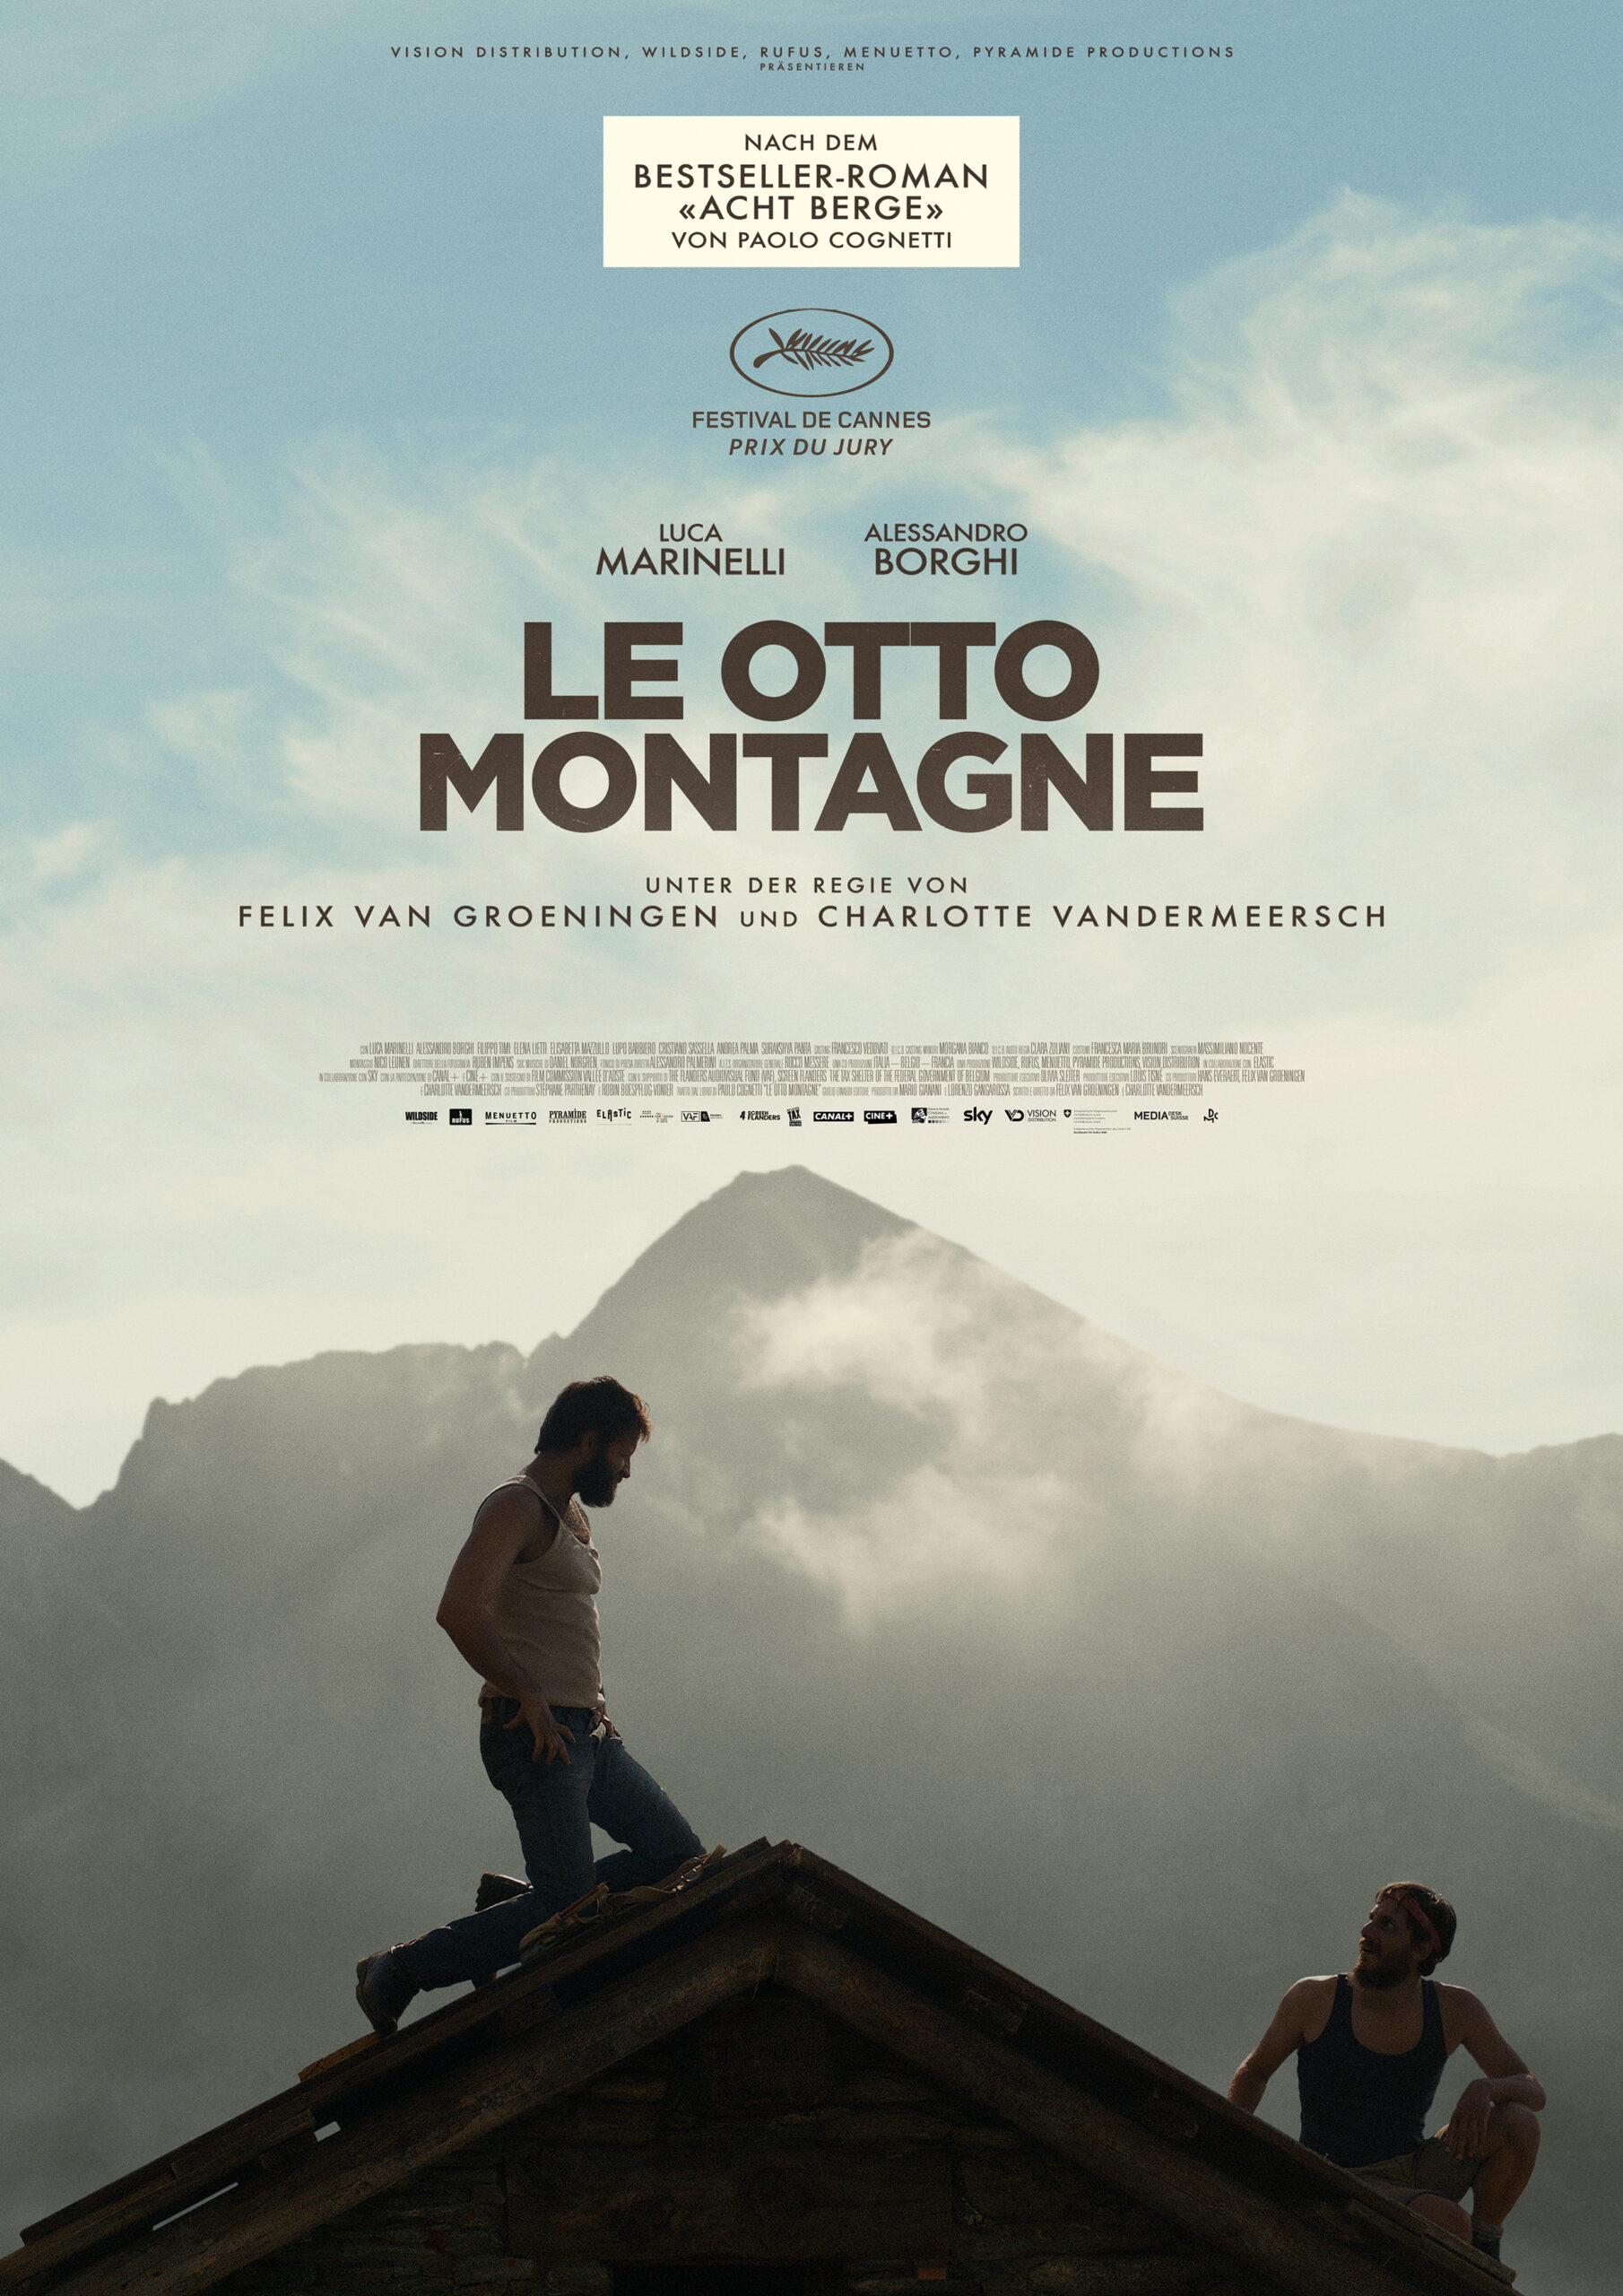 Film Kritik: Acht Berge ist eine fein ausgearbeitete Doppelcharakterstudie